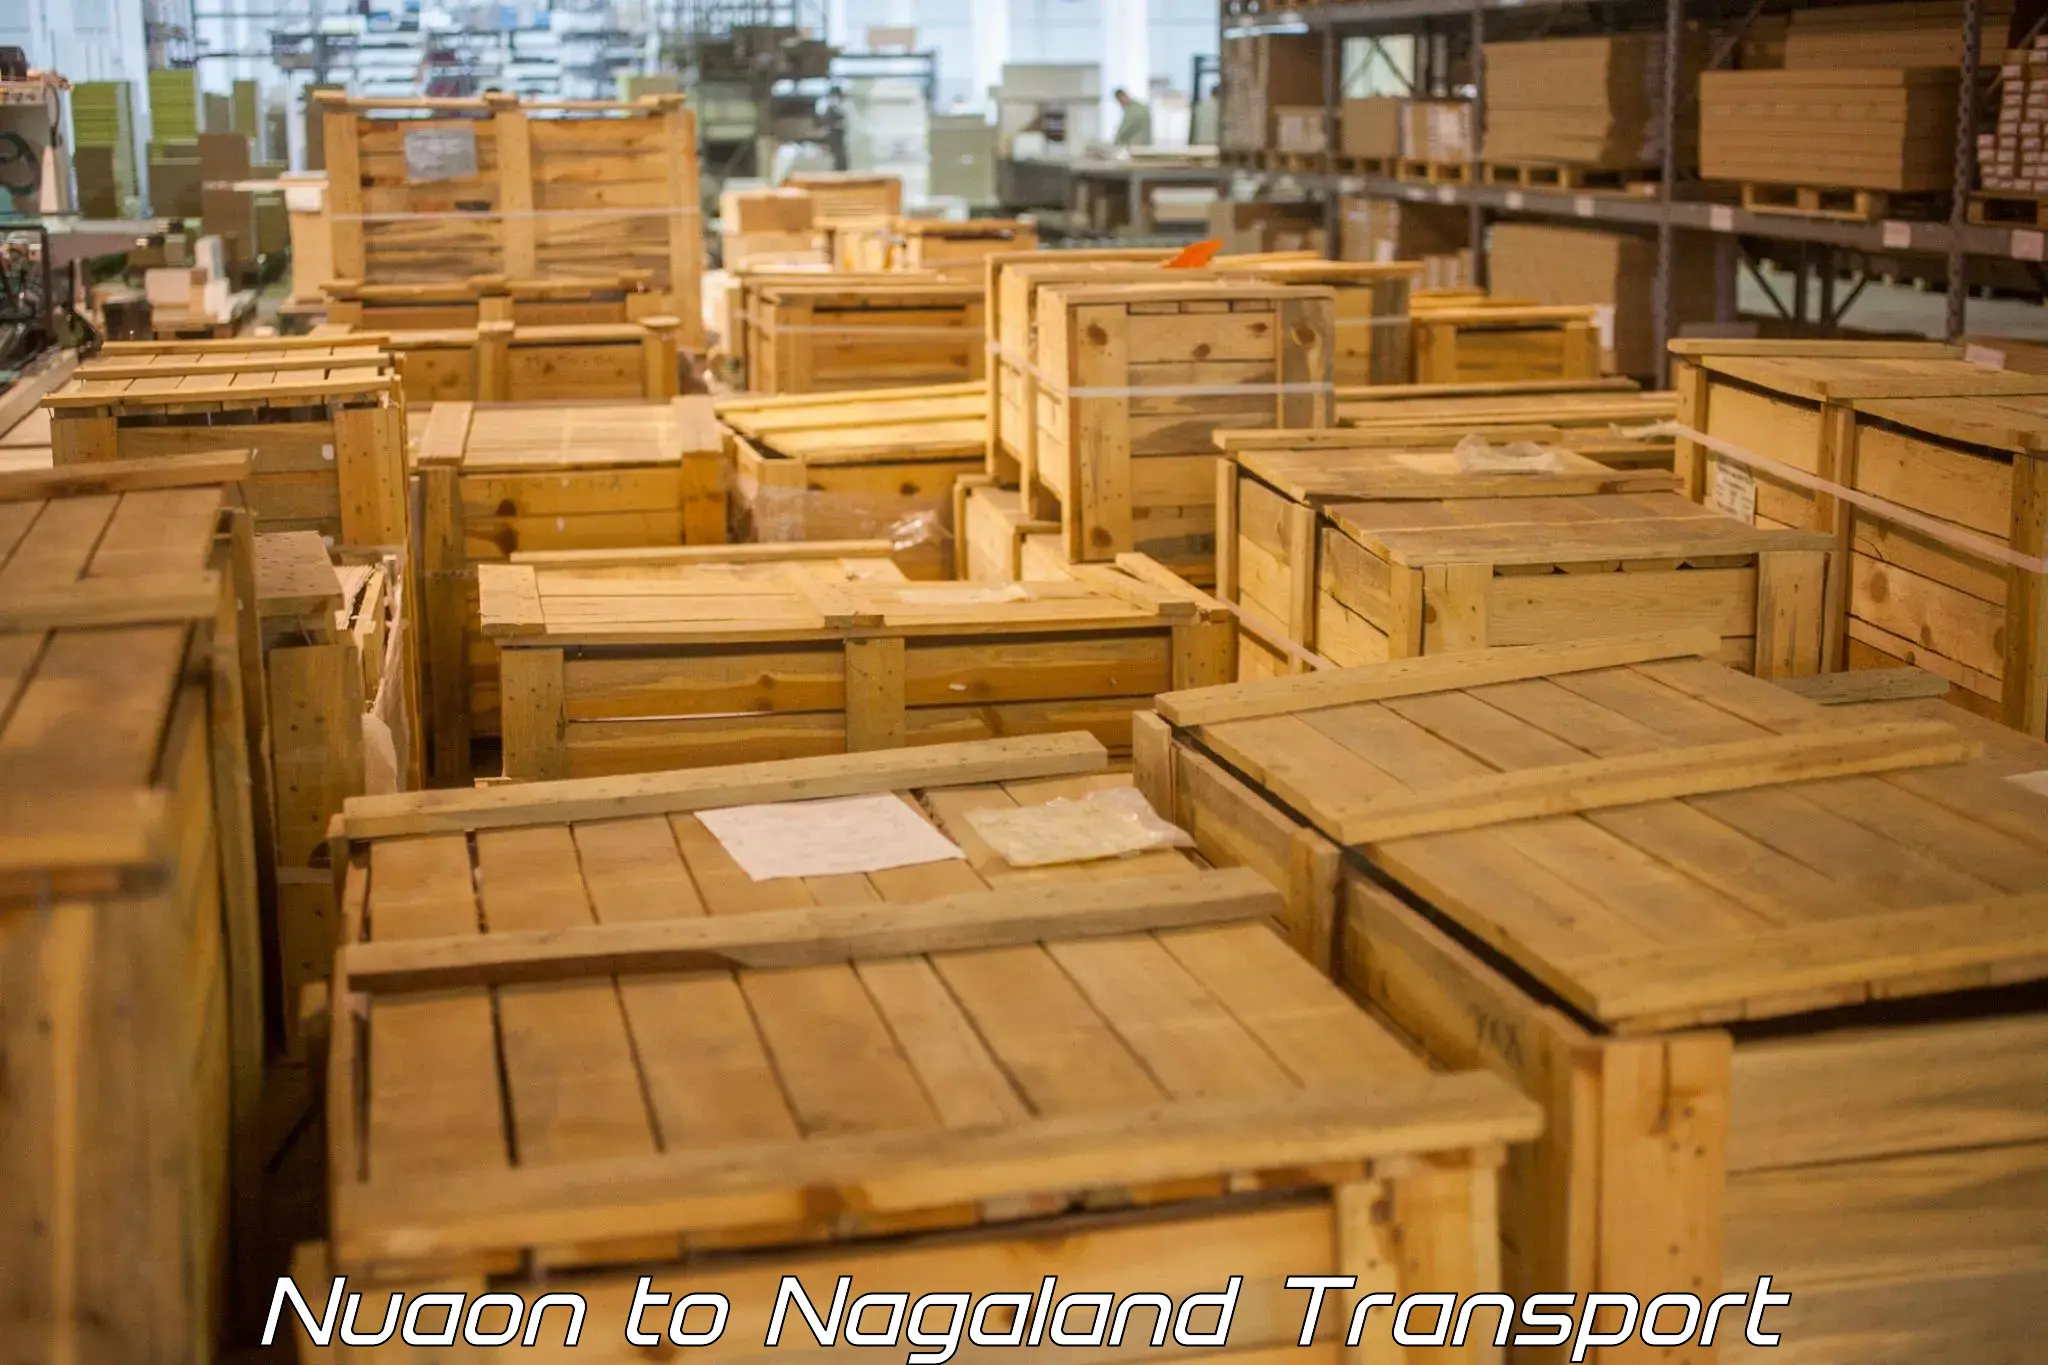 Daily transport service Nuaon to Nagaland